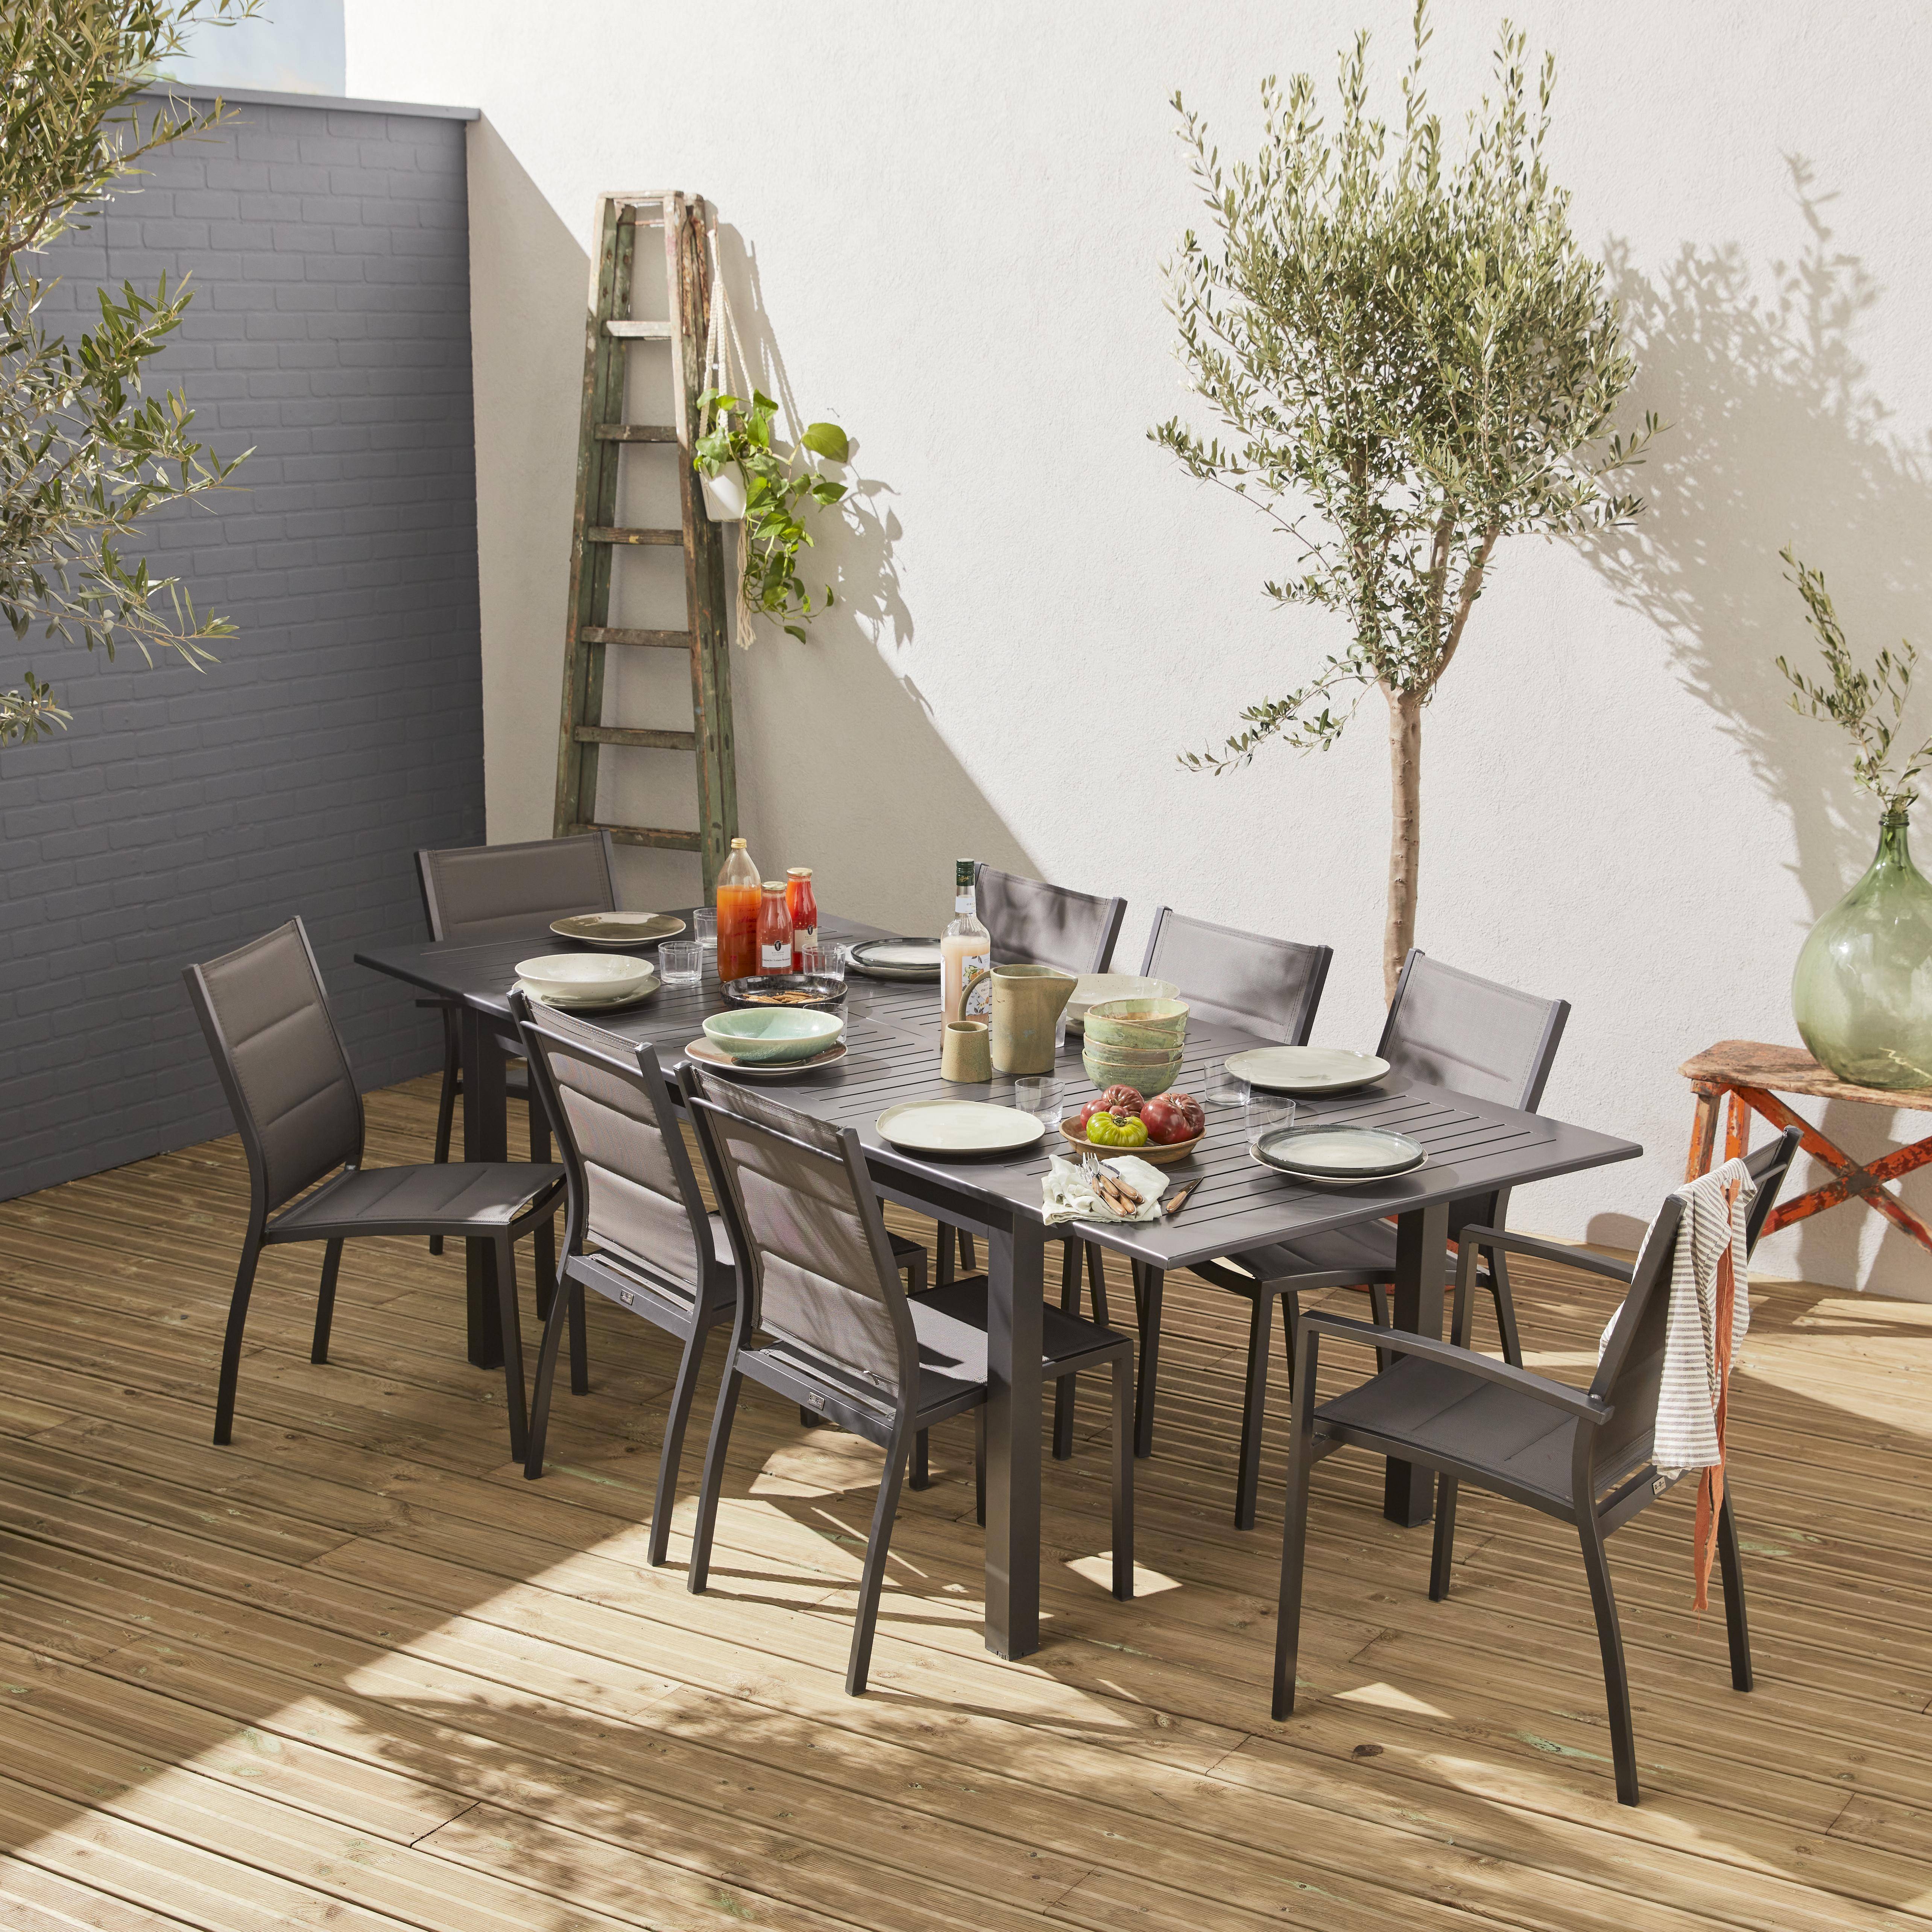 Set da giardino con tavolo allungabile - modello: Chicago, colore: Antracite - Tavolo in alluminio, dimensioni: 175/245cm con prolunga e 8 sedute in textilene Photo1